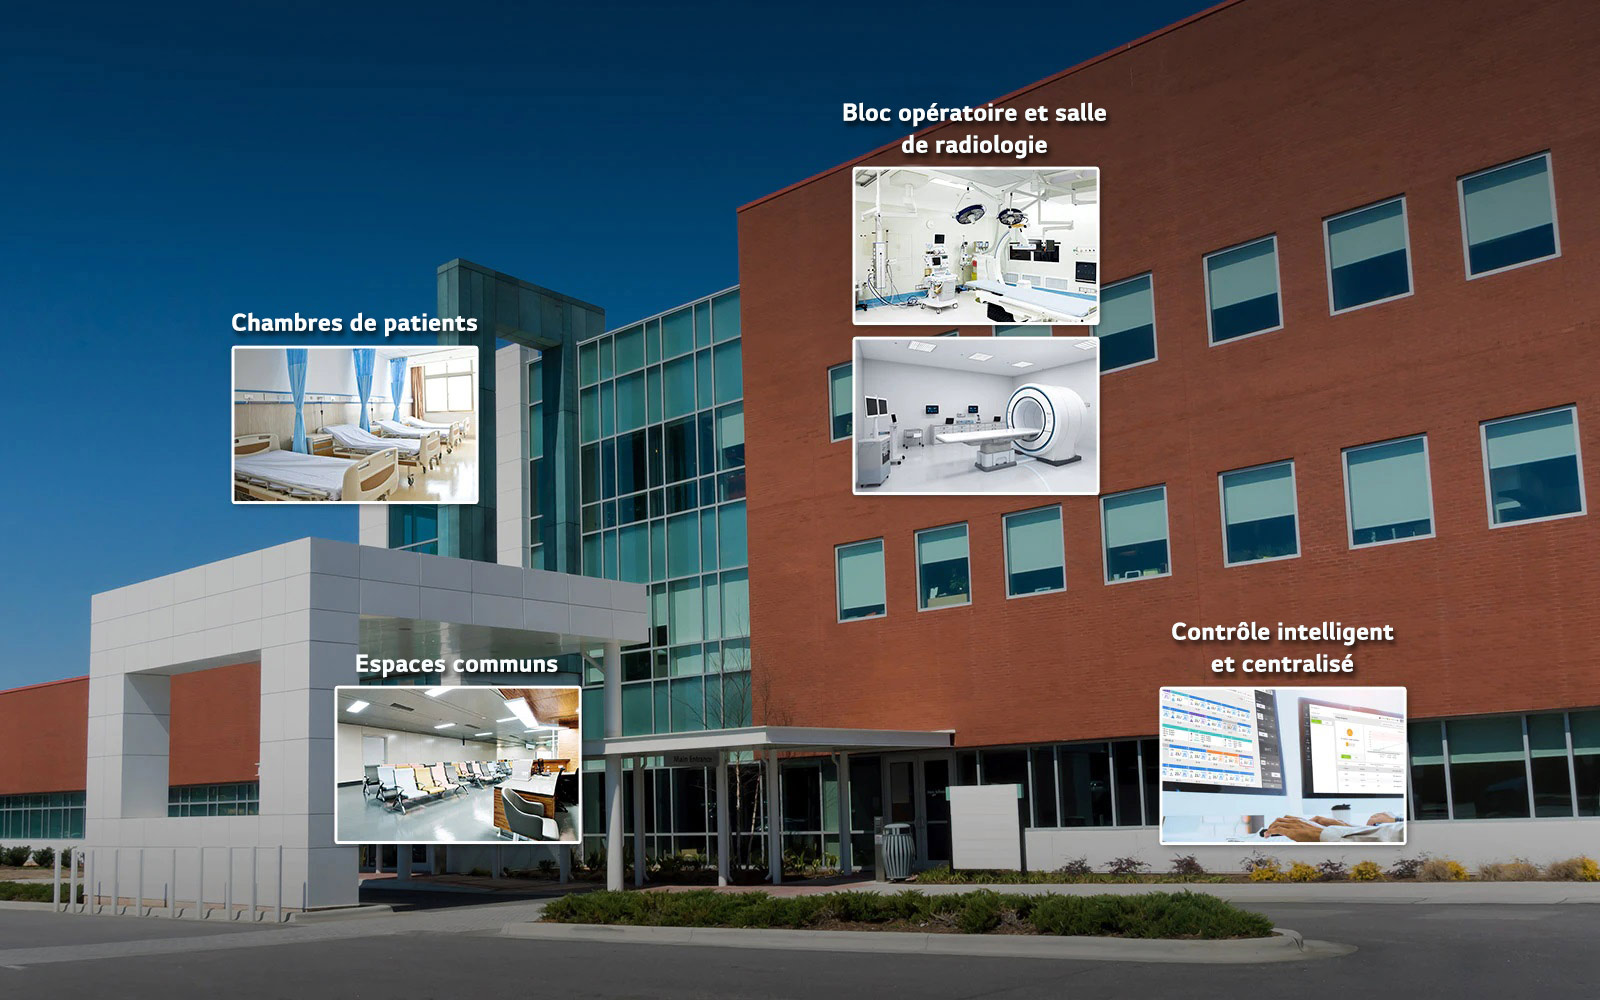 Image d’un hôpital présentant les miniatures d’une chambre de patient, d’un espace commun, d’un bloc opératoire, d’une salle de radiologie et d’un centre de contrôle.